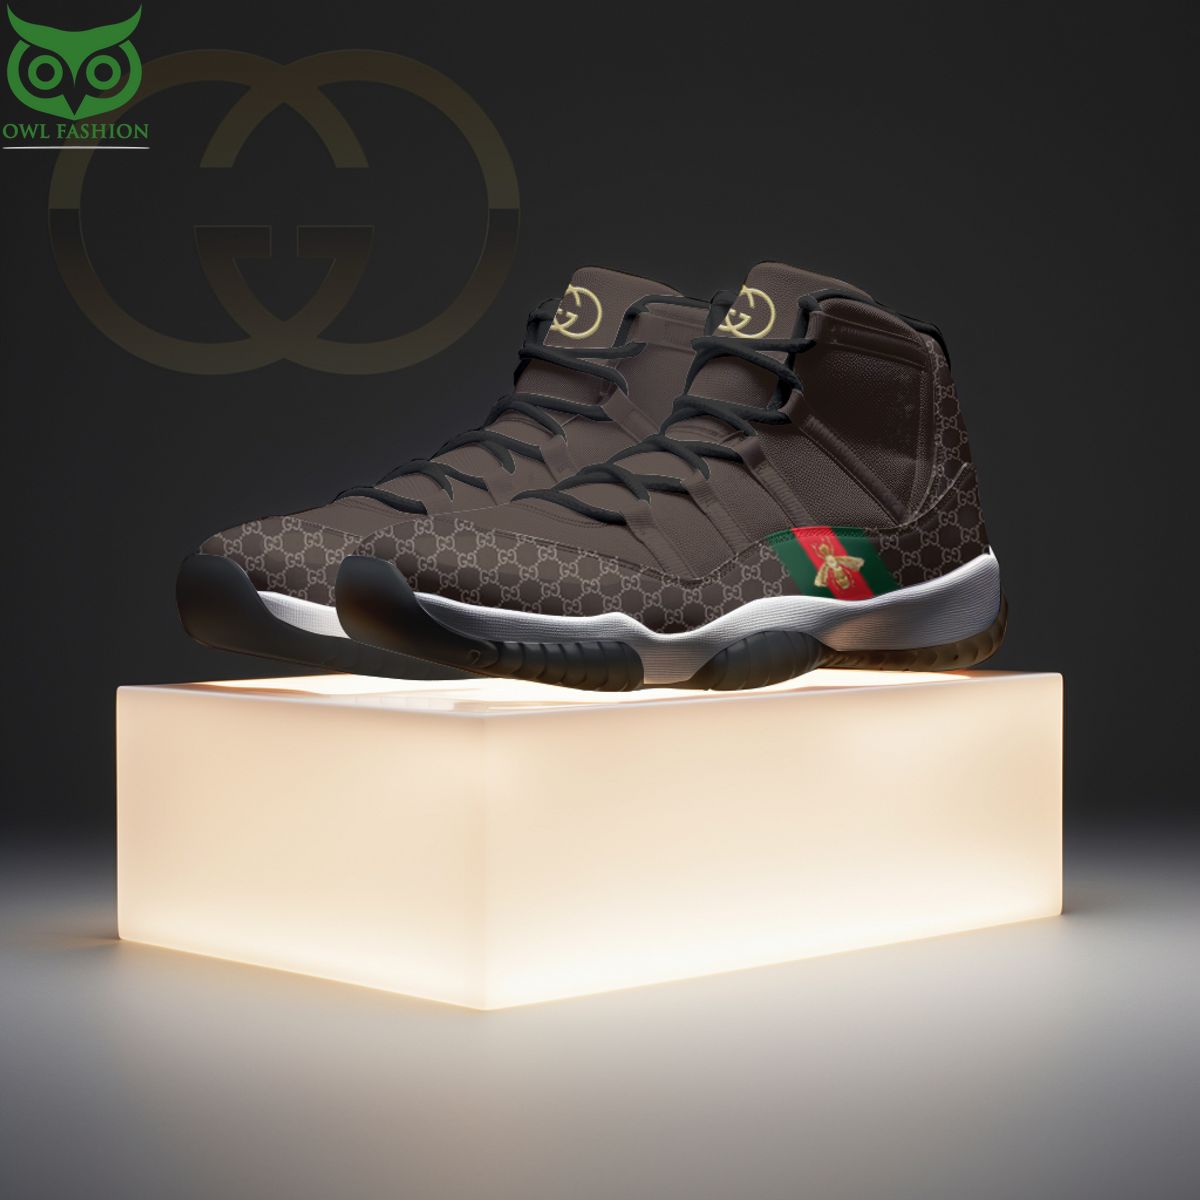 Limited Gucci Luxury Sneakers Air Jordan 11